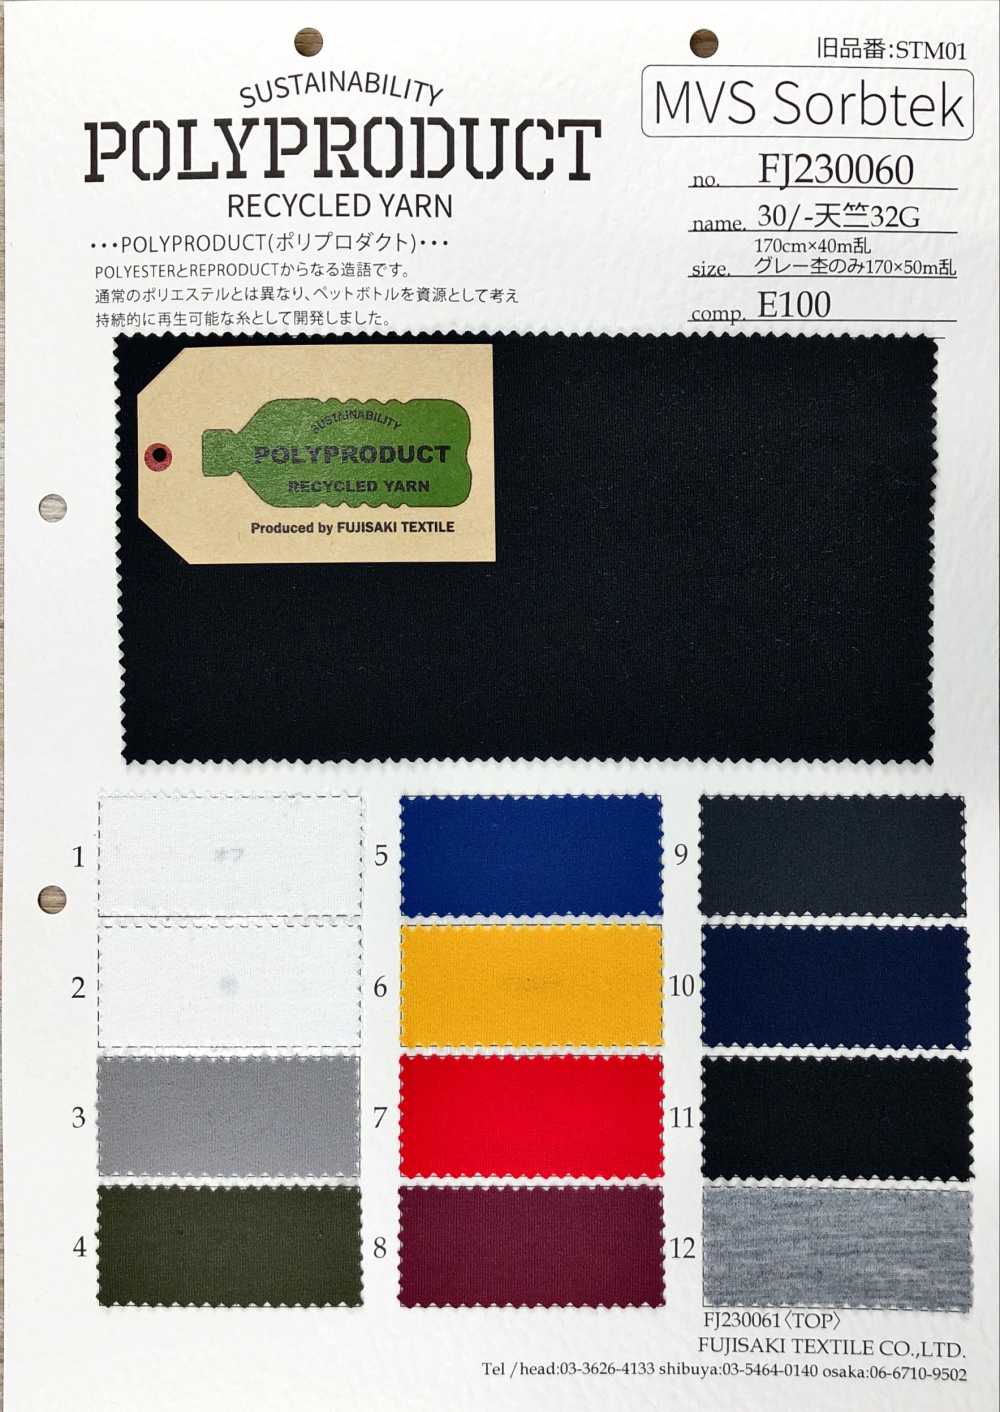 FJ230060 30/- T型布天竺平针织物[面料] Fujisaki Textile